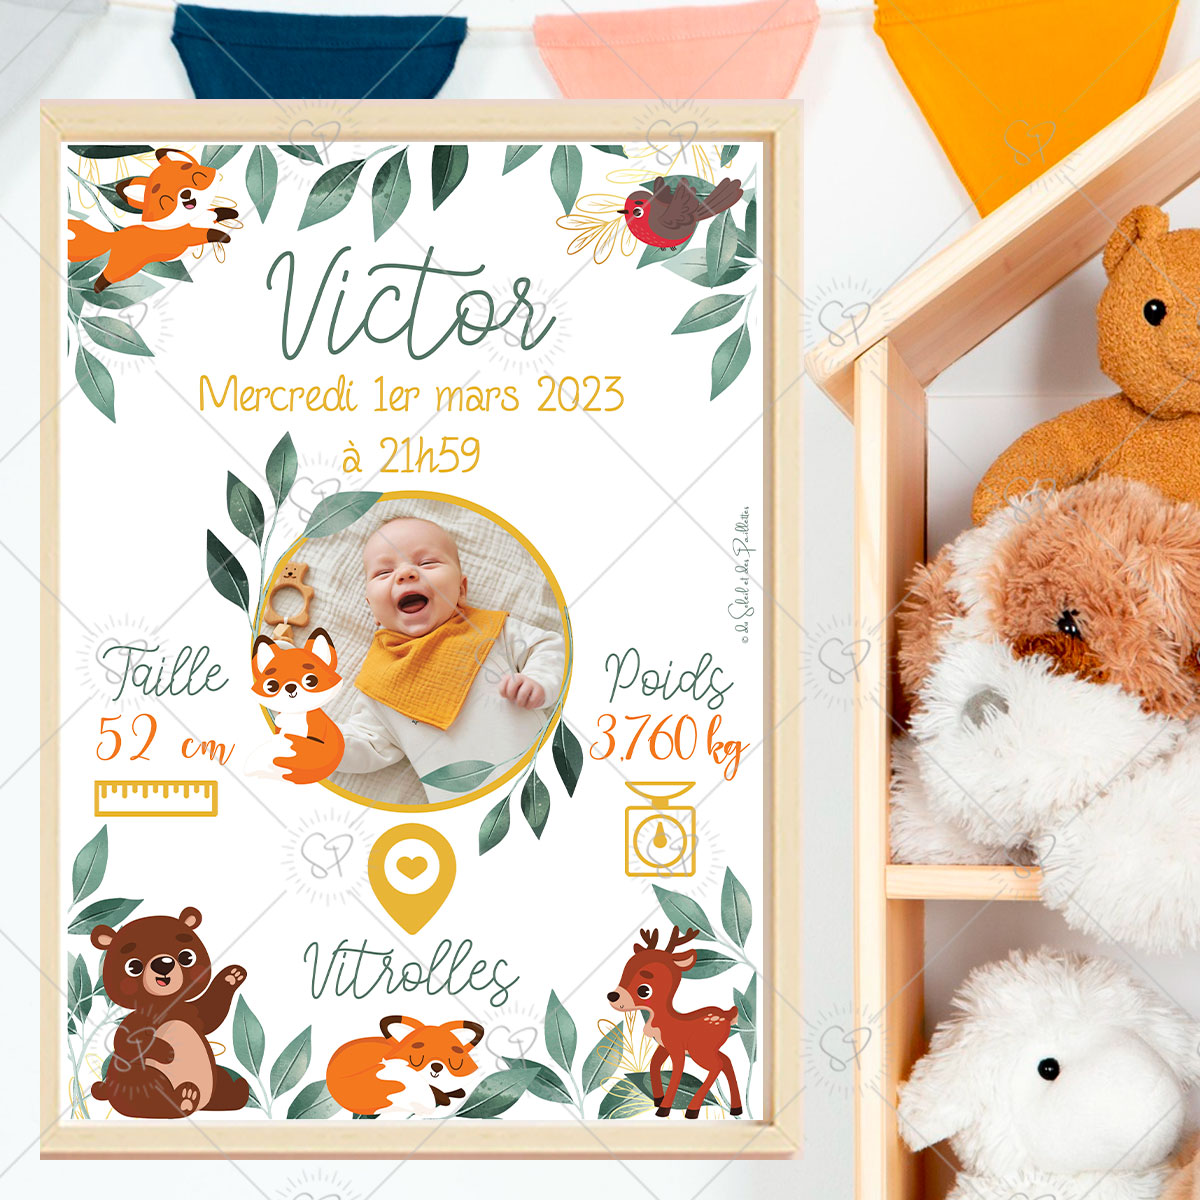 Immortalisez la naissance de votre enfant avec cette affiche personnalisable, ses feuilles tropicales et dorées et ses adorables animaux de la forêt tels que le renard, le renne et l'ours.